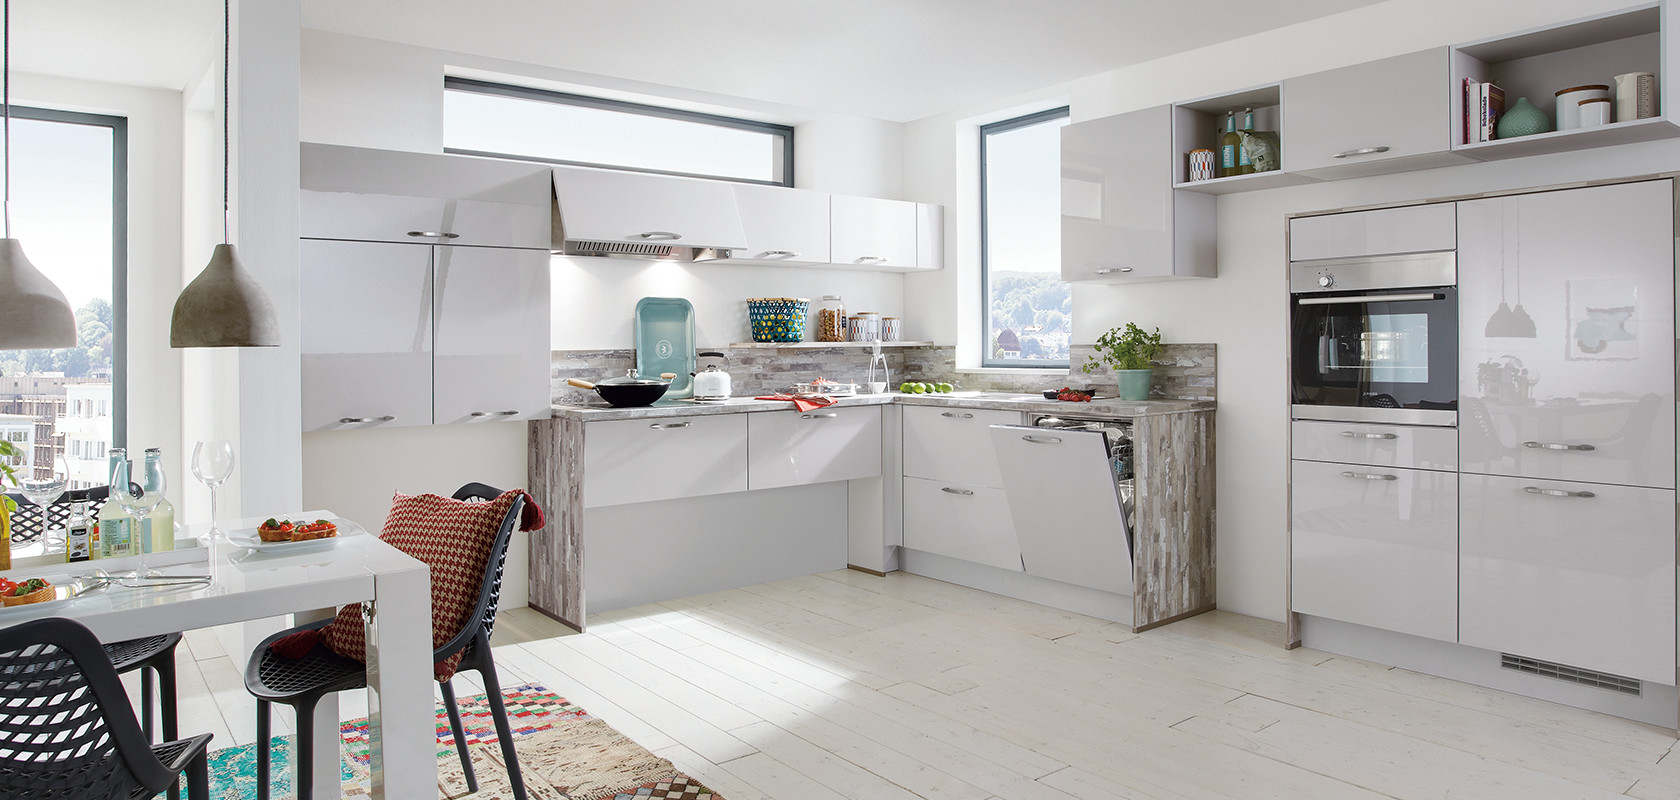 Luminosa cucina moderna con mobili bianchi, elettrodomestici in acciaio inossidabile e tocchi di colore da oggetti decorativi e un tappeto multicolore.